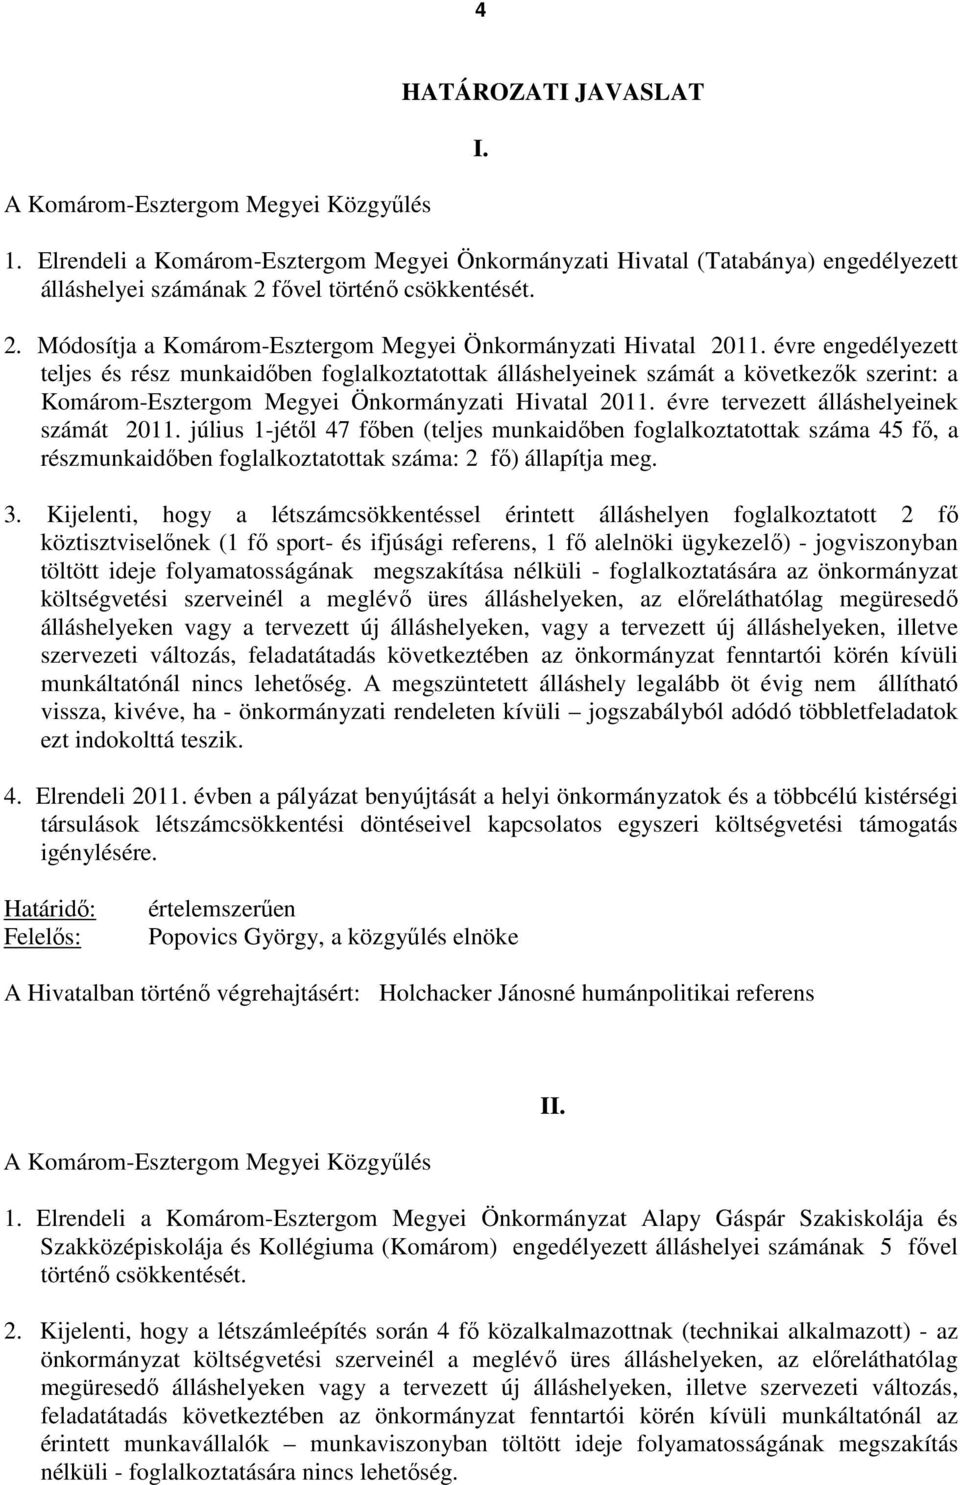 évre engedélyezett teljes és rész munkaidıben foglalkoztatottak álláshelyeinek számát a következık szerint: a Komárom-Esztergom Megyei Önkormányzati Hivatal 2011.